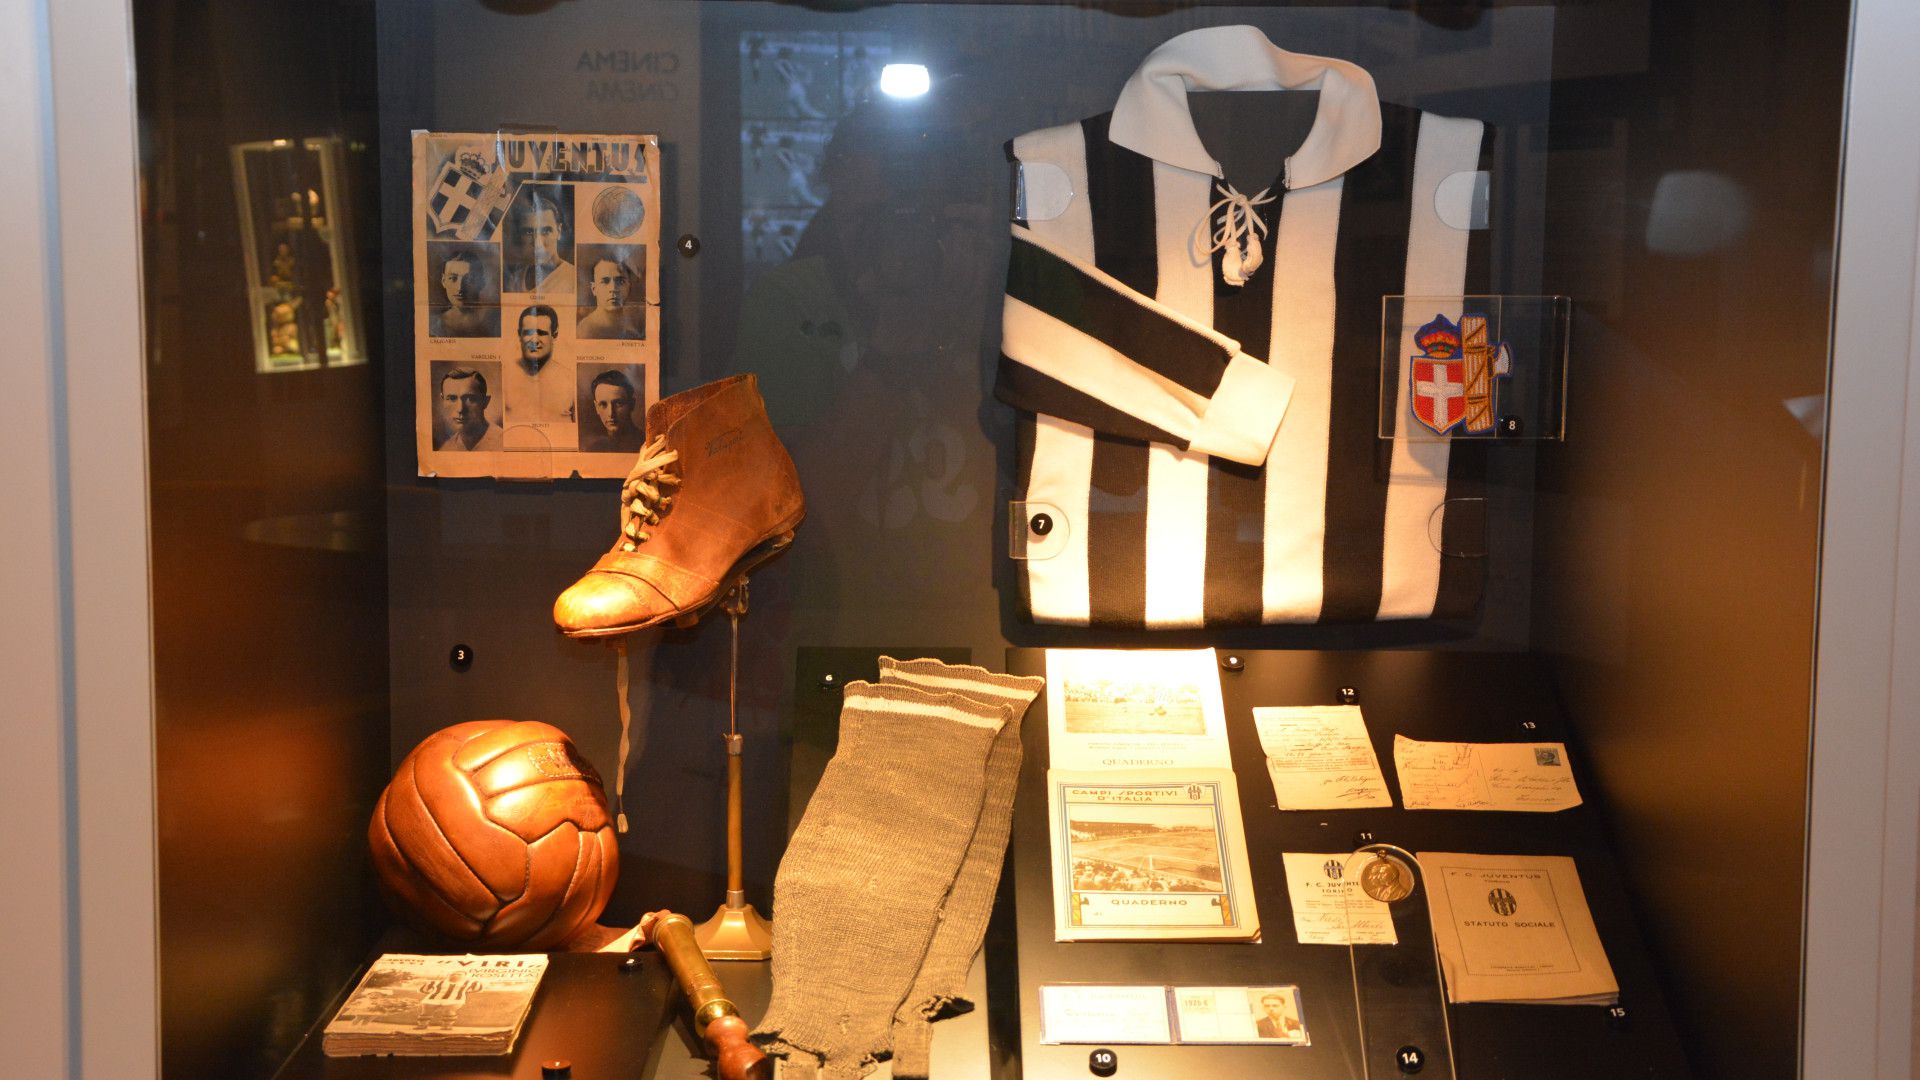 Olaszországban mindmáig őrzik a híres magyar futballista különböző relikviáit, többek között a mezét és a focicsukáját is